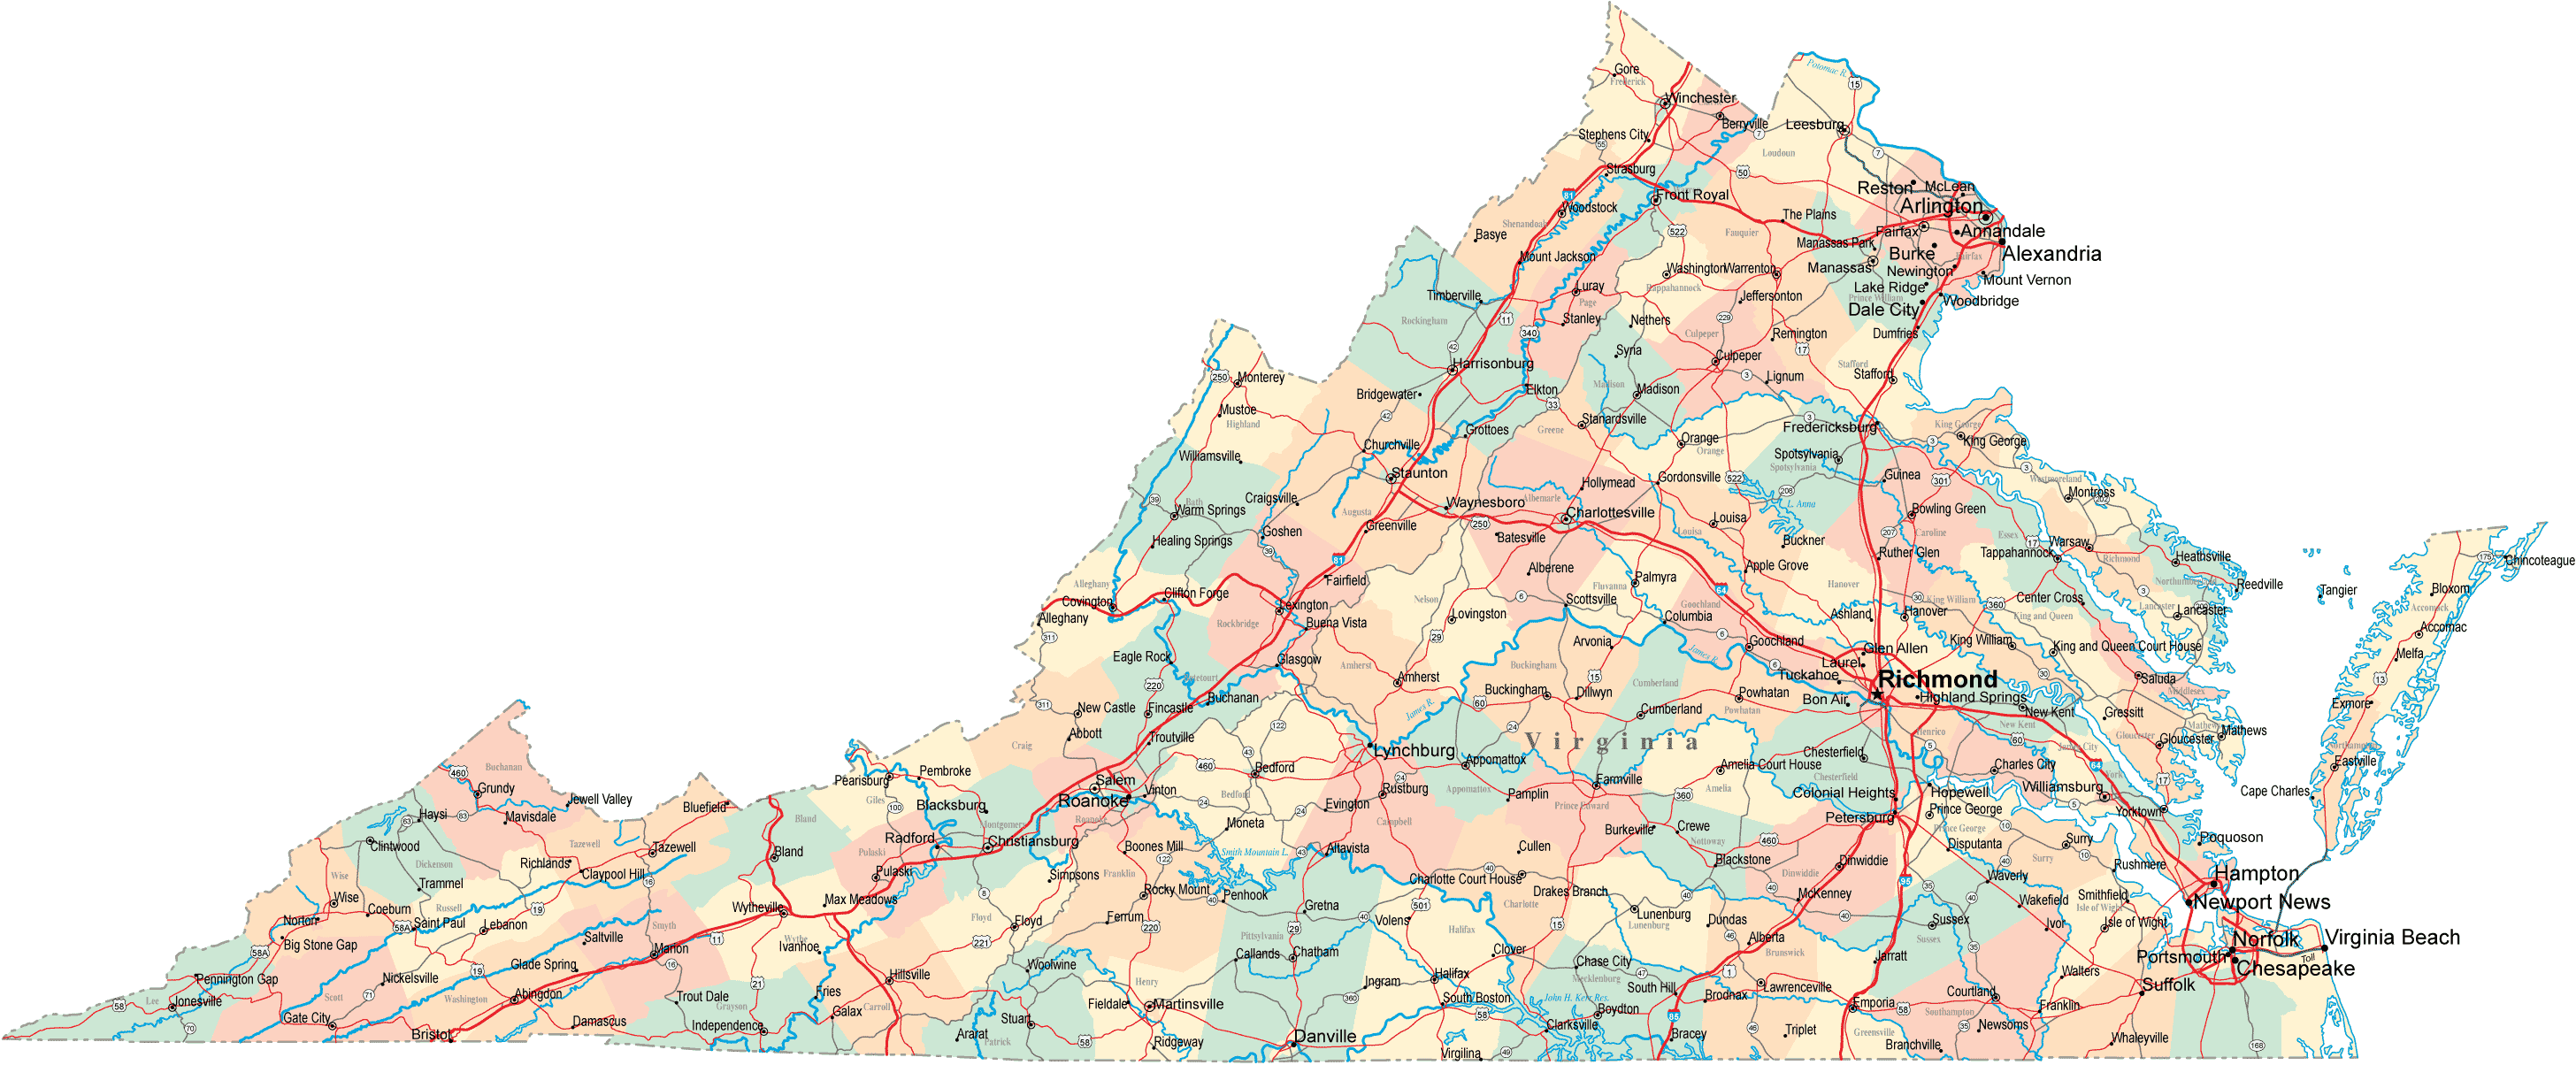 Driving Map Of Virginia Virginia Road Map   VA Road Map   Virginia Highway Map